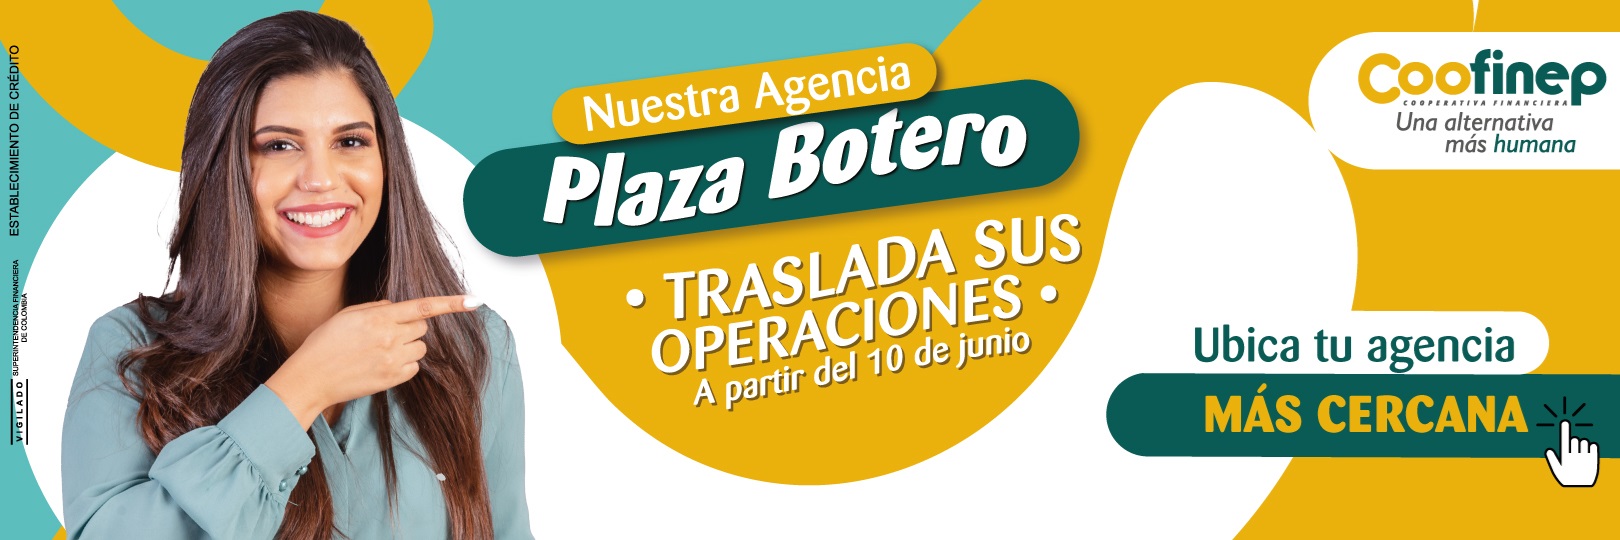 Traslado de operaciones Agencia Plaza Botero